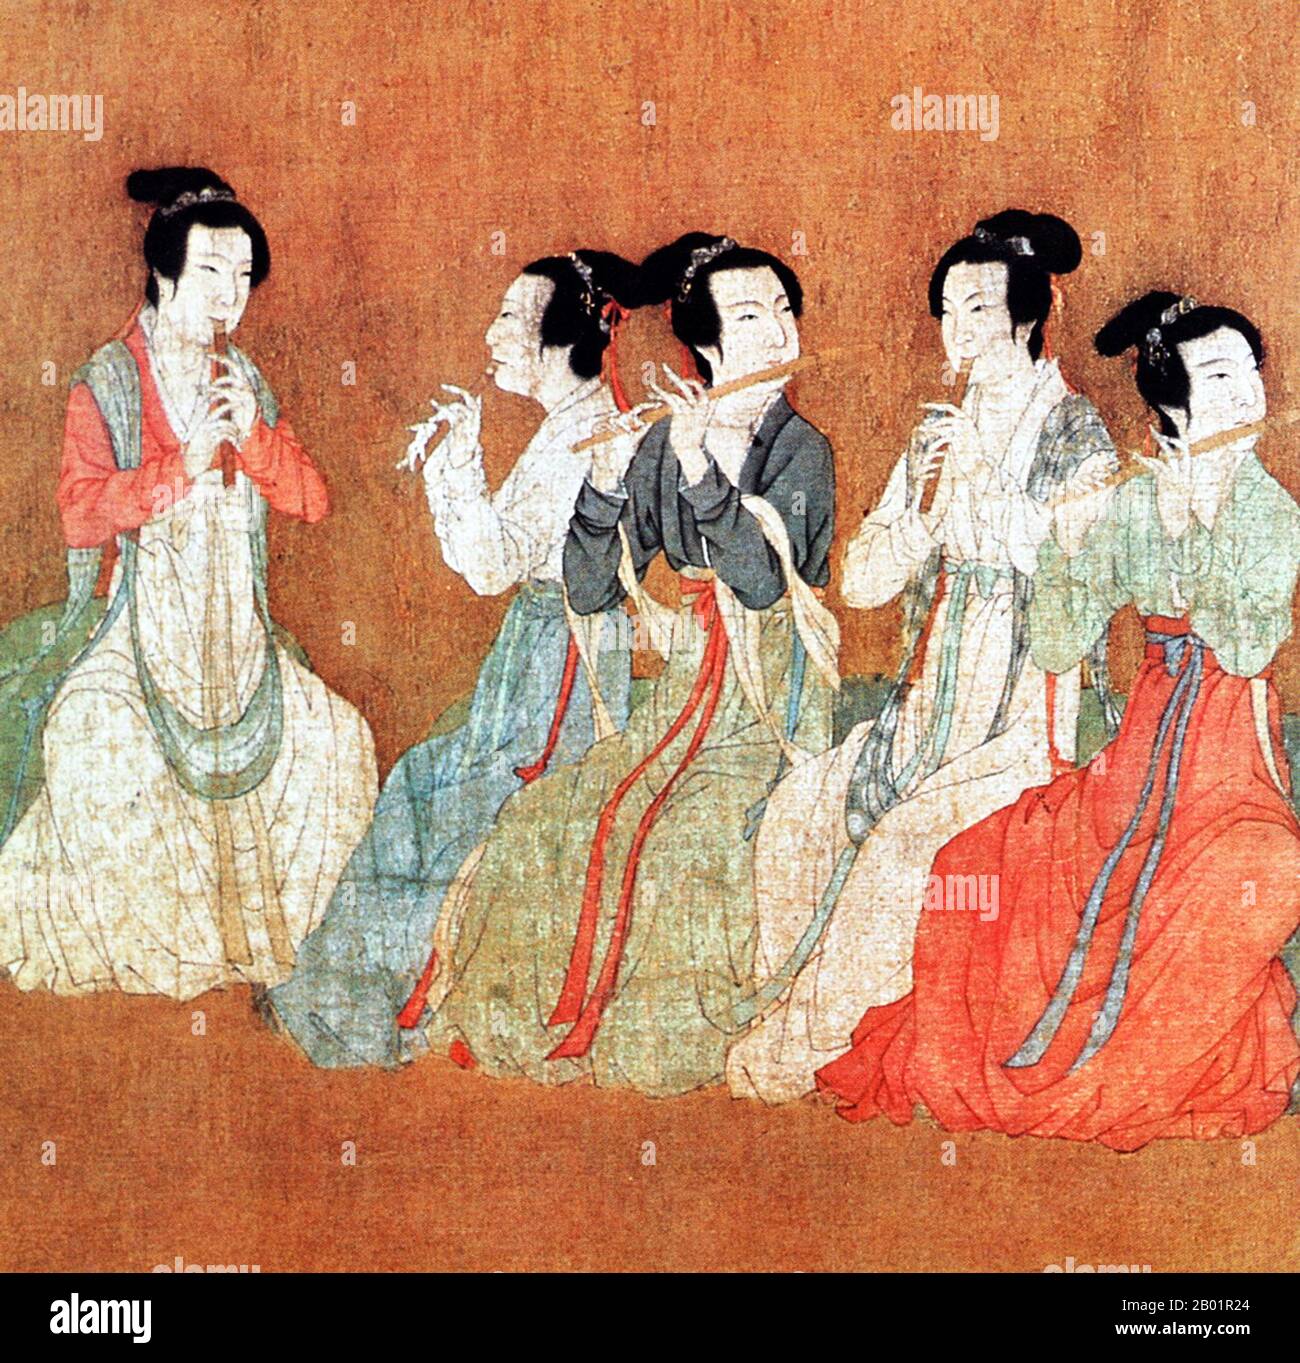 China: Fünf Frauen spielen Flöten. Detail aus dem Handschriftenbild „Night Revels of Han Xizai“ von Gu Hongzhong (937–975), spätere Song Dynastie (960–1279) Remake eines Originals aus dem 10. Jahrhundert. Die Nachtschichten von Han Xizai sind eine gemalte Schriftrolle, die Han Xizai, einen Minister des südlichen Tang-Kaisers Li Yu (937–978) darstellt. Dieses erzählerische Gemälde ist in fünf verschiedene Abschnitte unterteilt: Han Xizai hört der Pipa zu, beobachtet Tänzer, ruht sich aus, spielt Saiteninstrumente und sieht die Gäste aus. Stockfoto